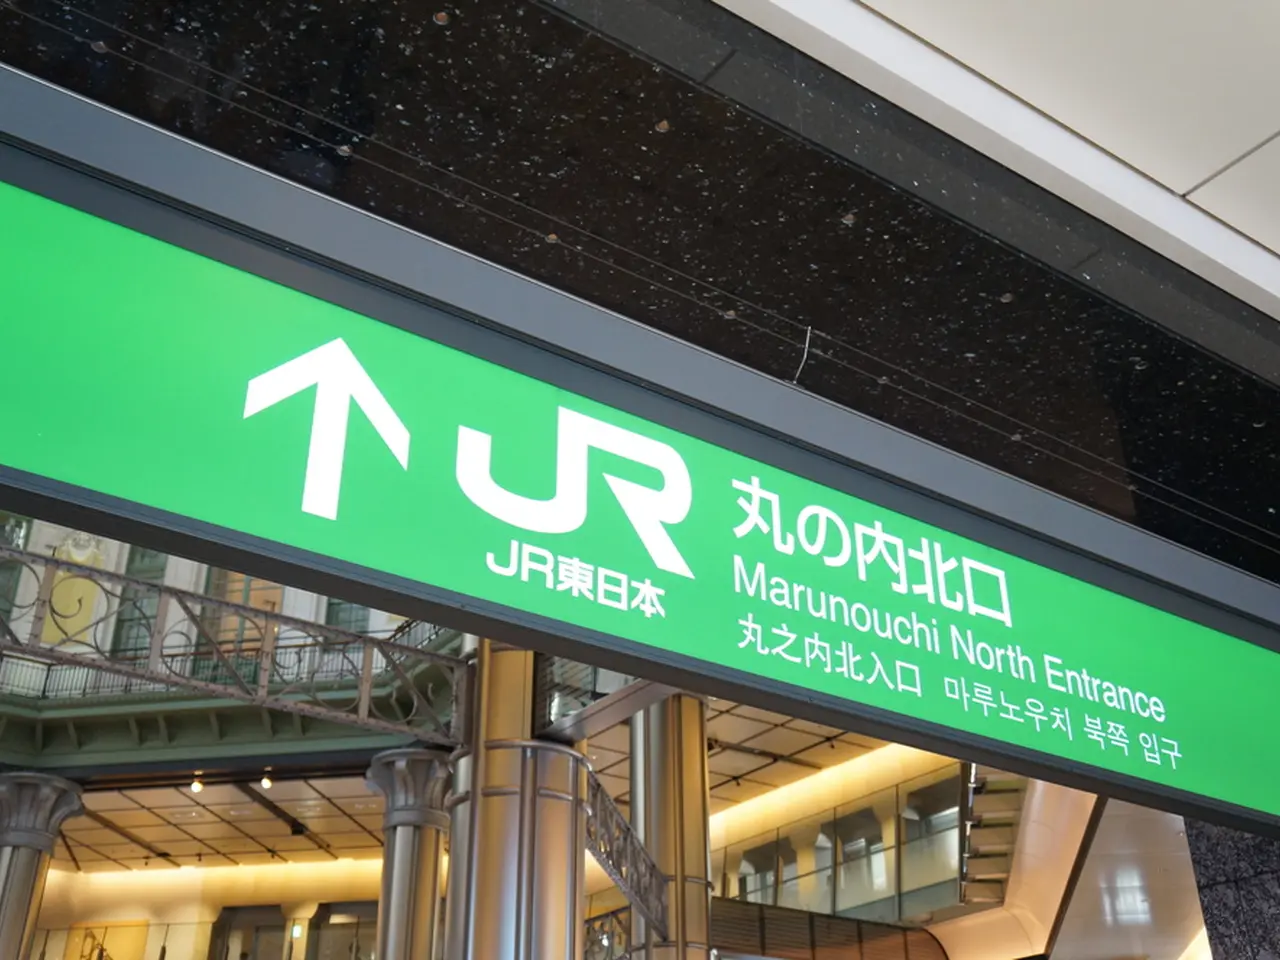 もう迷わない 東京駅 丸の内口 改札の行き方やできること攻略ガイド Holiday ホリデー